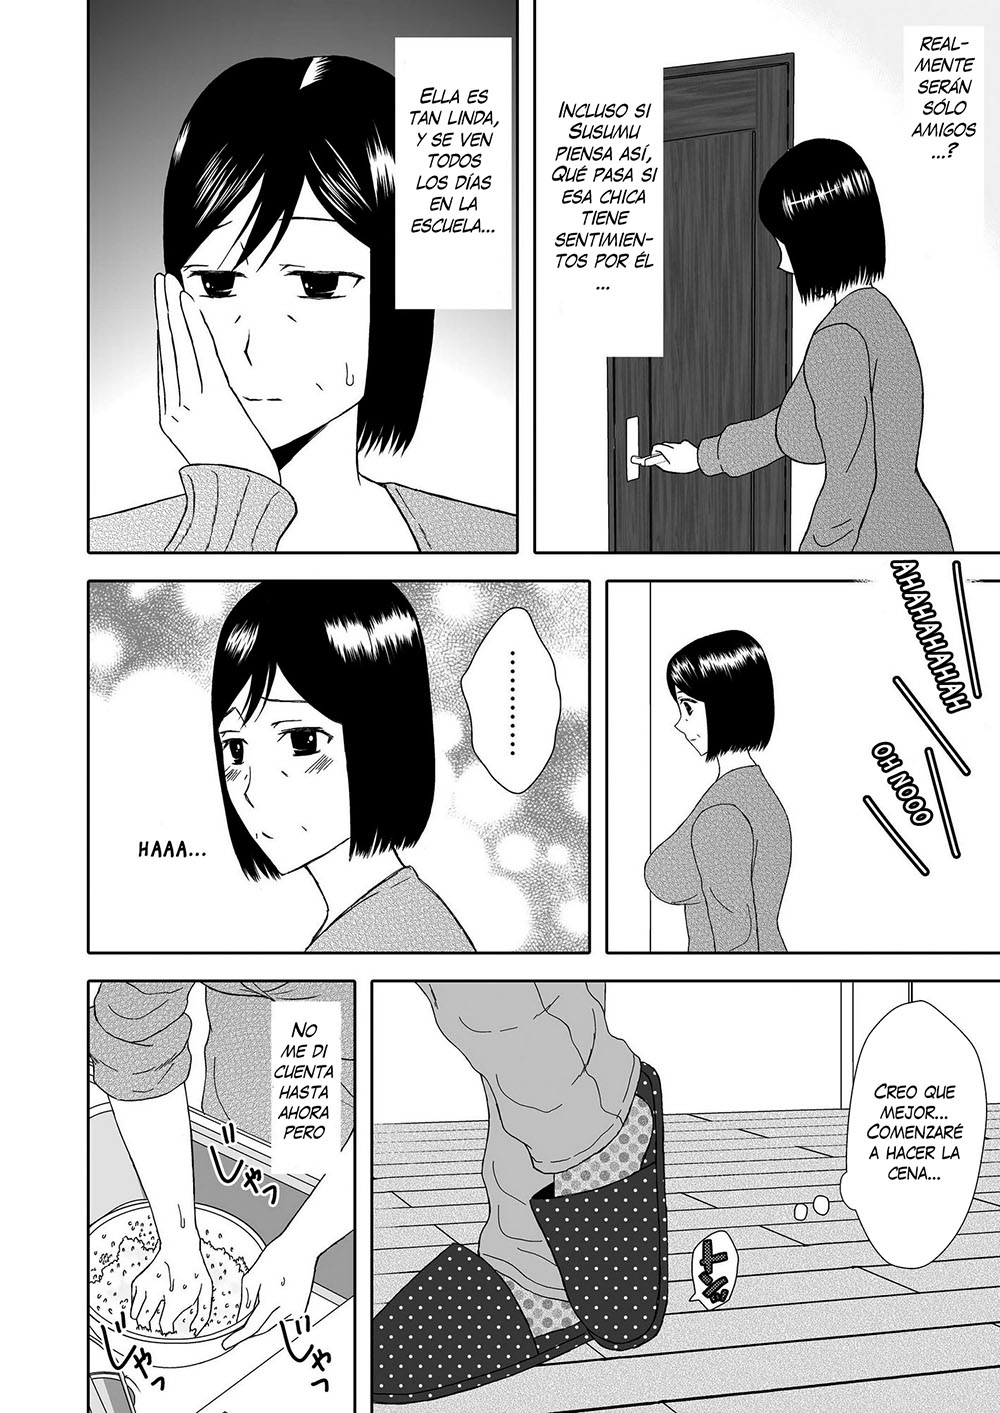 Kaa-san to Koibito Seikatsu #2 - 9 - Comics Porno - Hentai Manga - Cartoon XXX